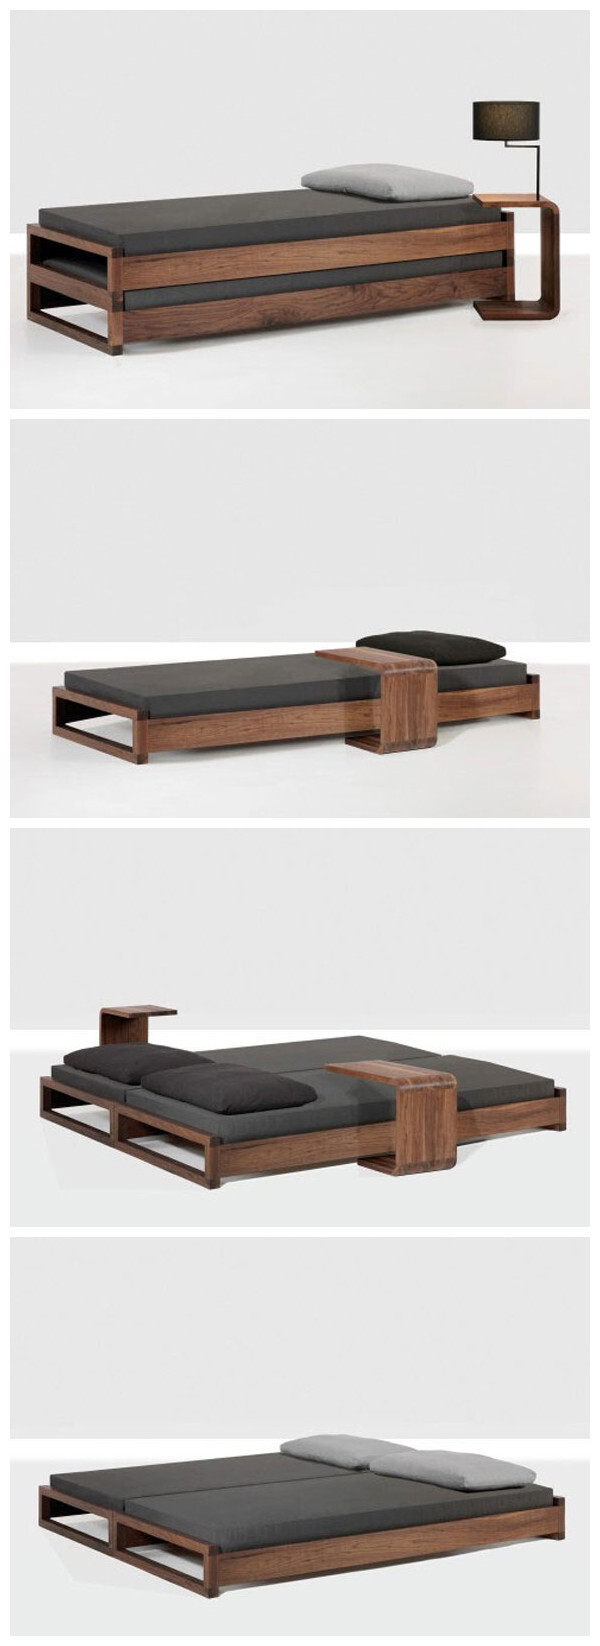 我想要的东西很特别，就如这张床。既能当单人床，又能当双人床。旁边还有个简单小巧的桌子，适合躺着看电视玩电脑。简约风~